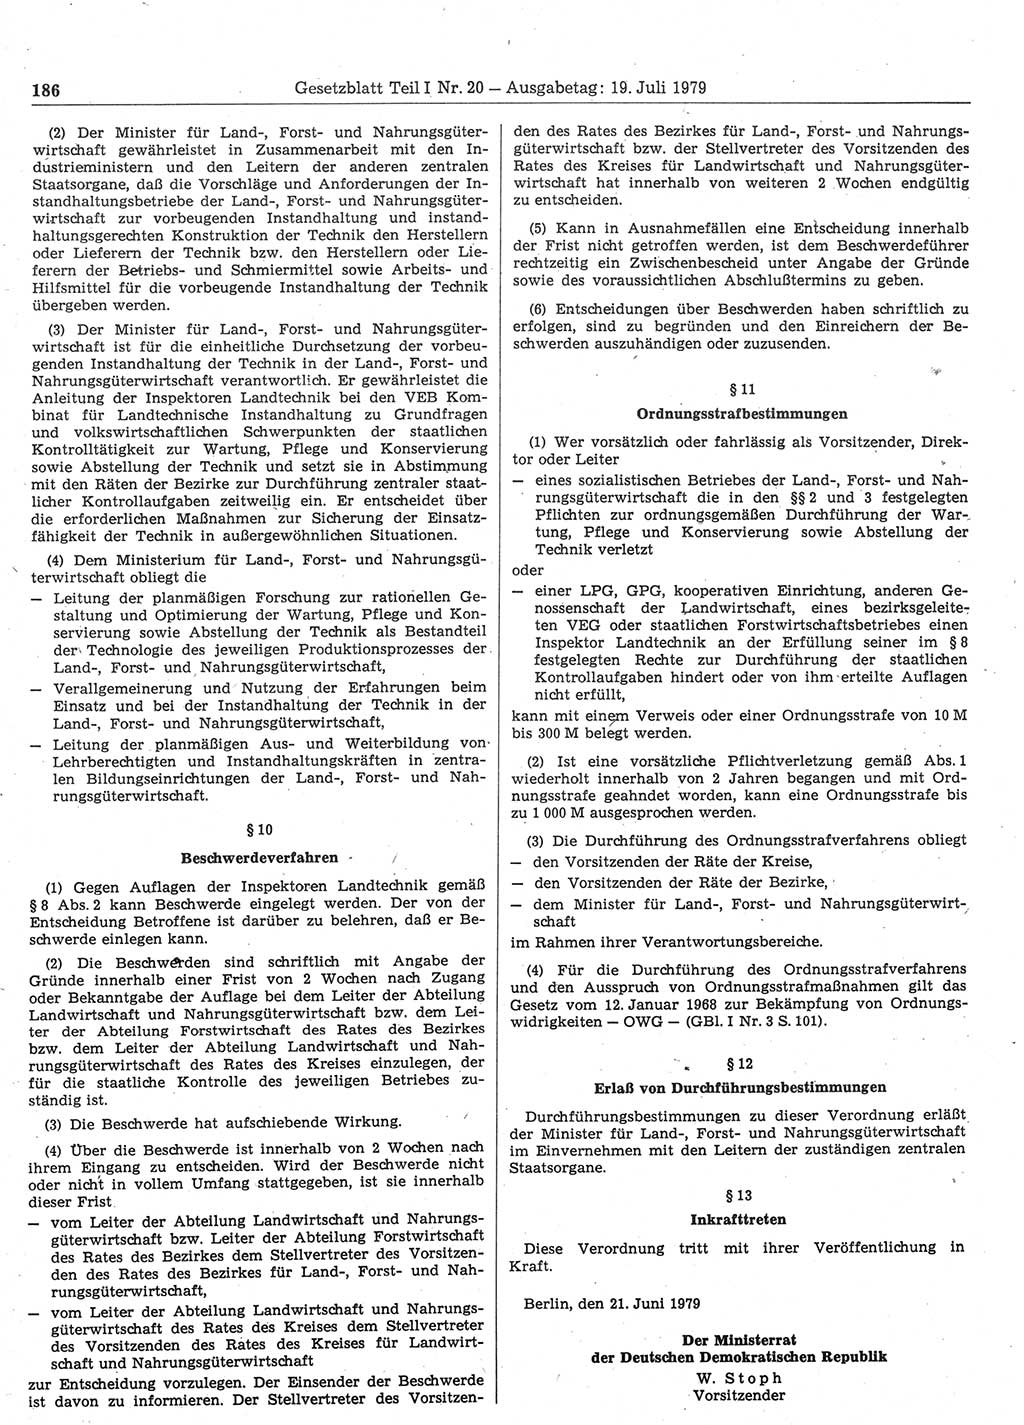 Gesetzblatt (GBl.) der Deutschen Demokratischen Republik (DDR) Teil Ⅰ 1979, Seite 186 (GBl. DDR Ⅰ 1979, S. 186)